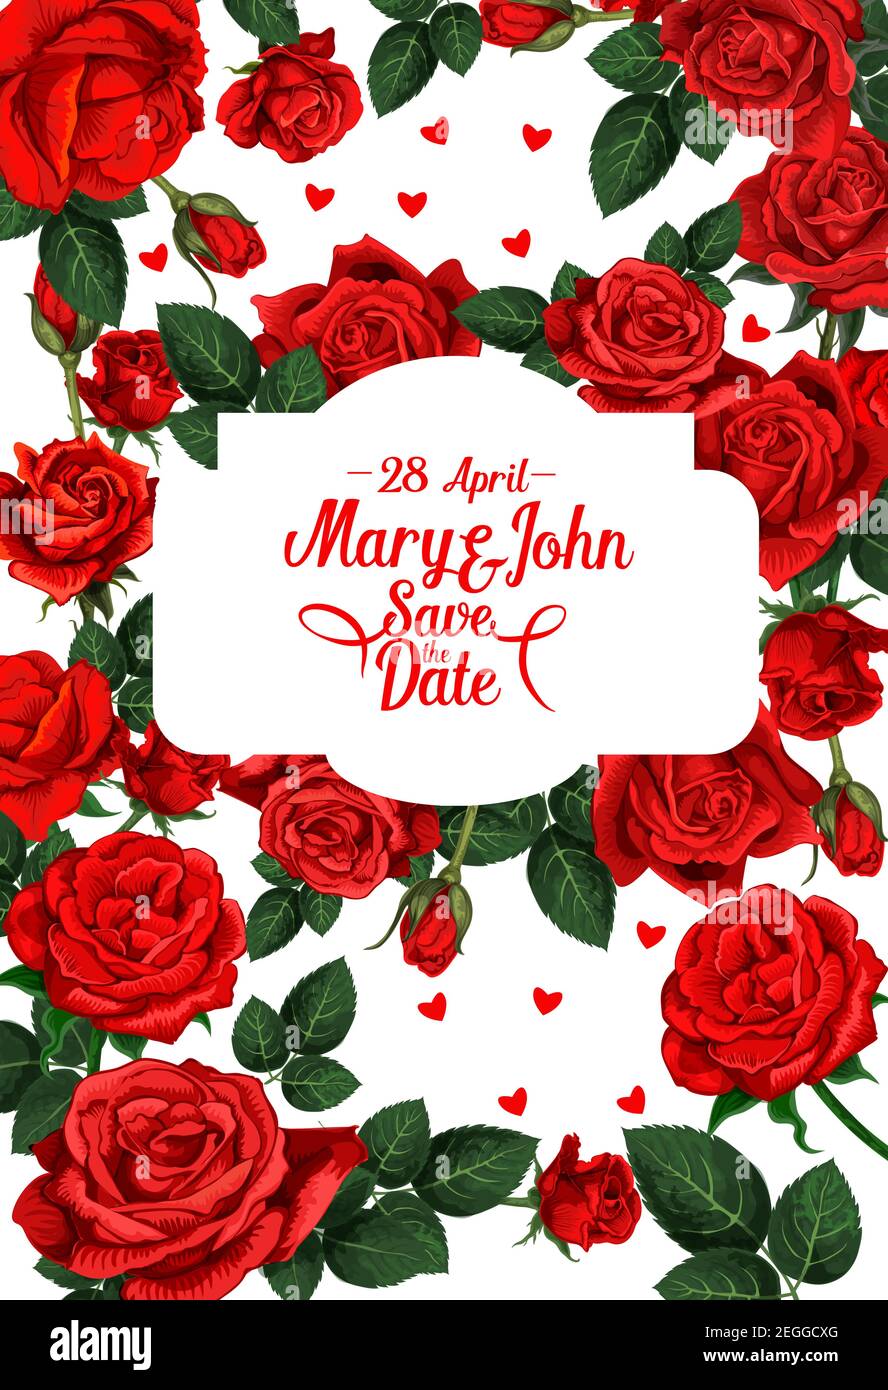 Guardar la Fecha de invitación de boda tarjeta de rosas rojas flores patrón  y novia y el marco de nombre de novio. Vector diseño floral para matrimonio  tarjeta de felicitación de Imagen